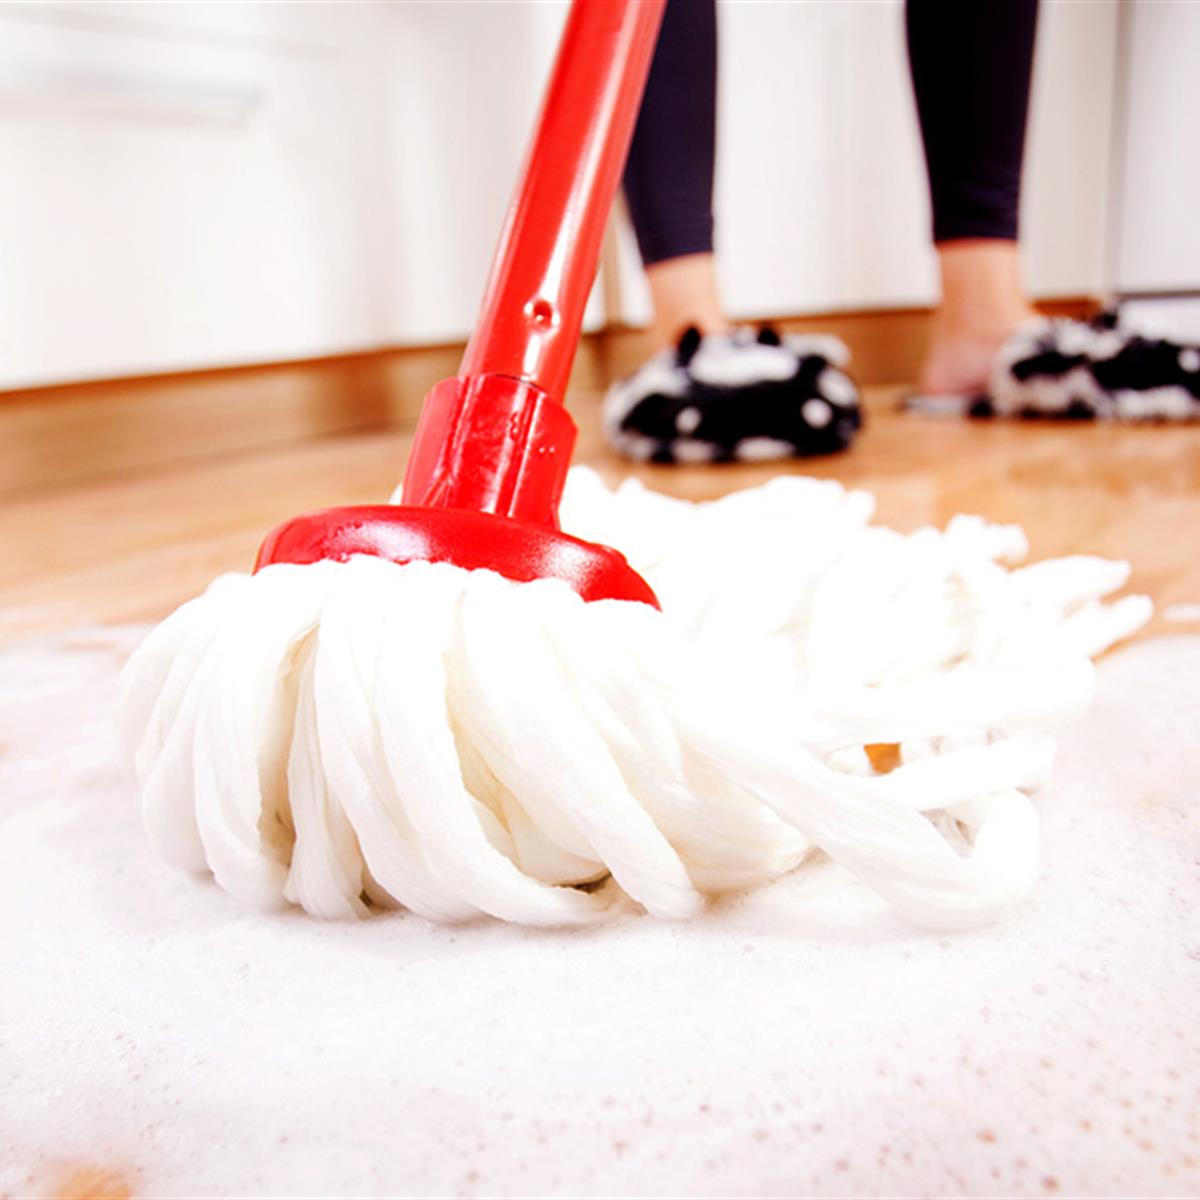 5 usos del bicarbonato de sodio para la limpieza del hogar